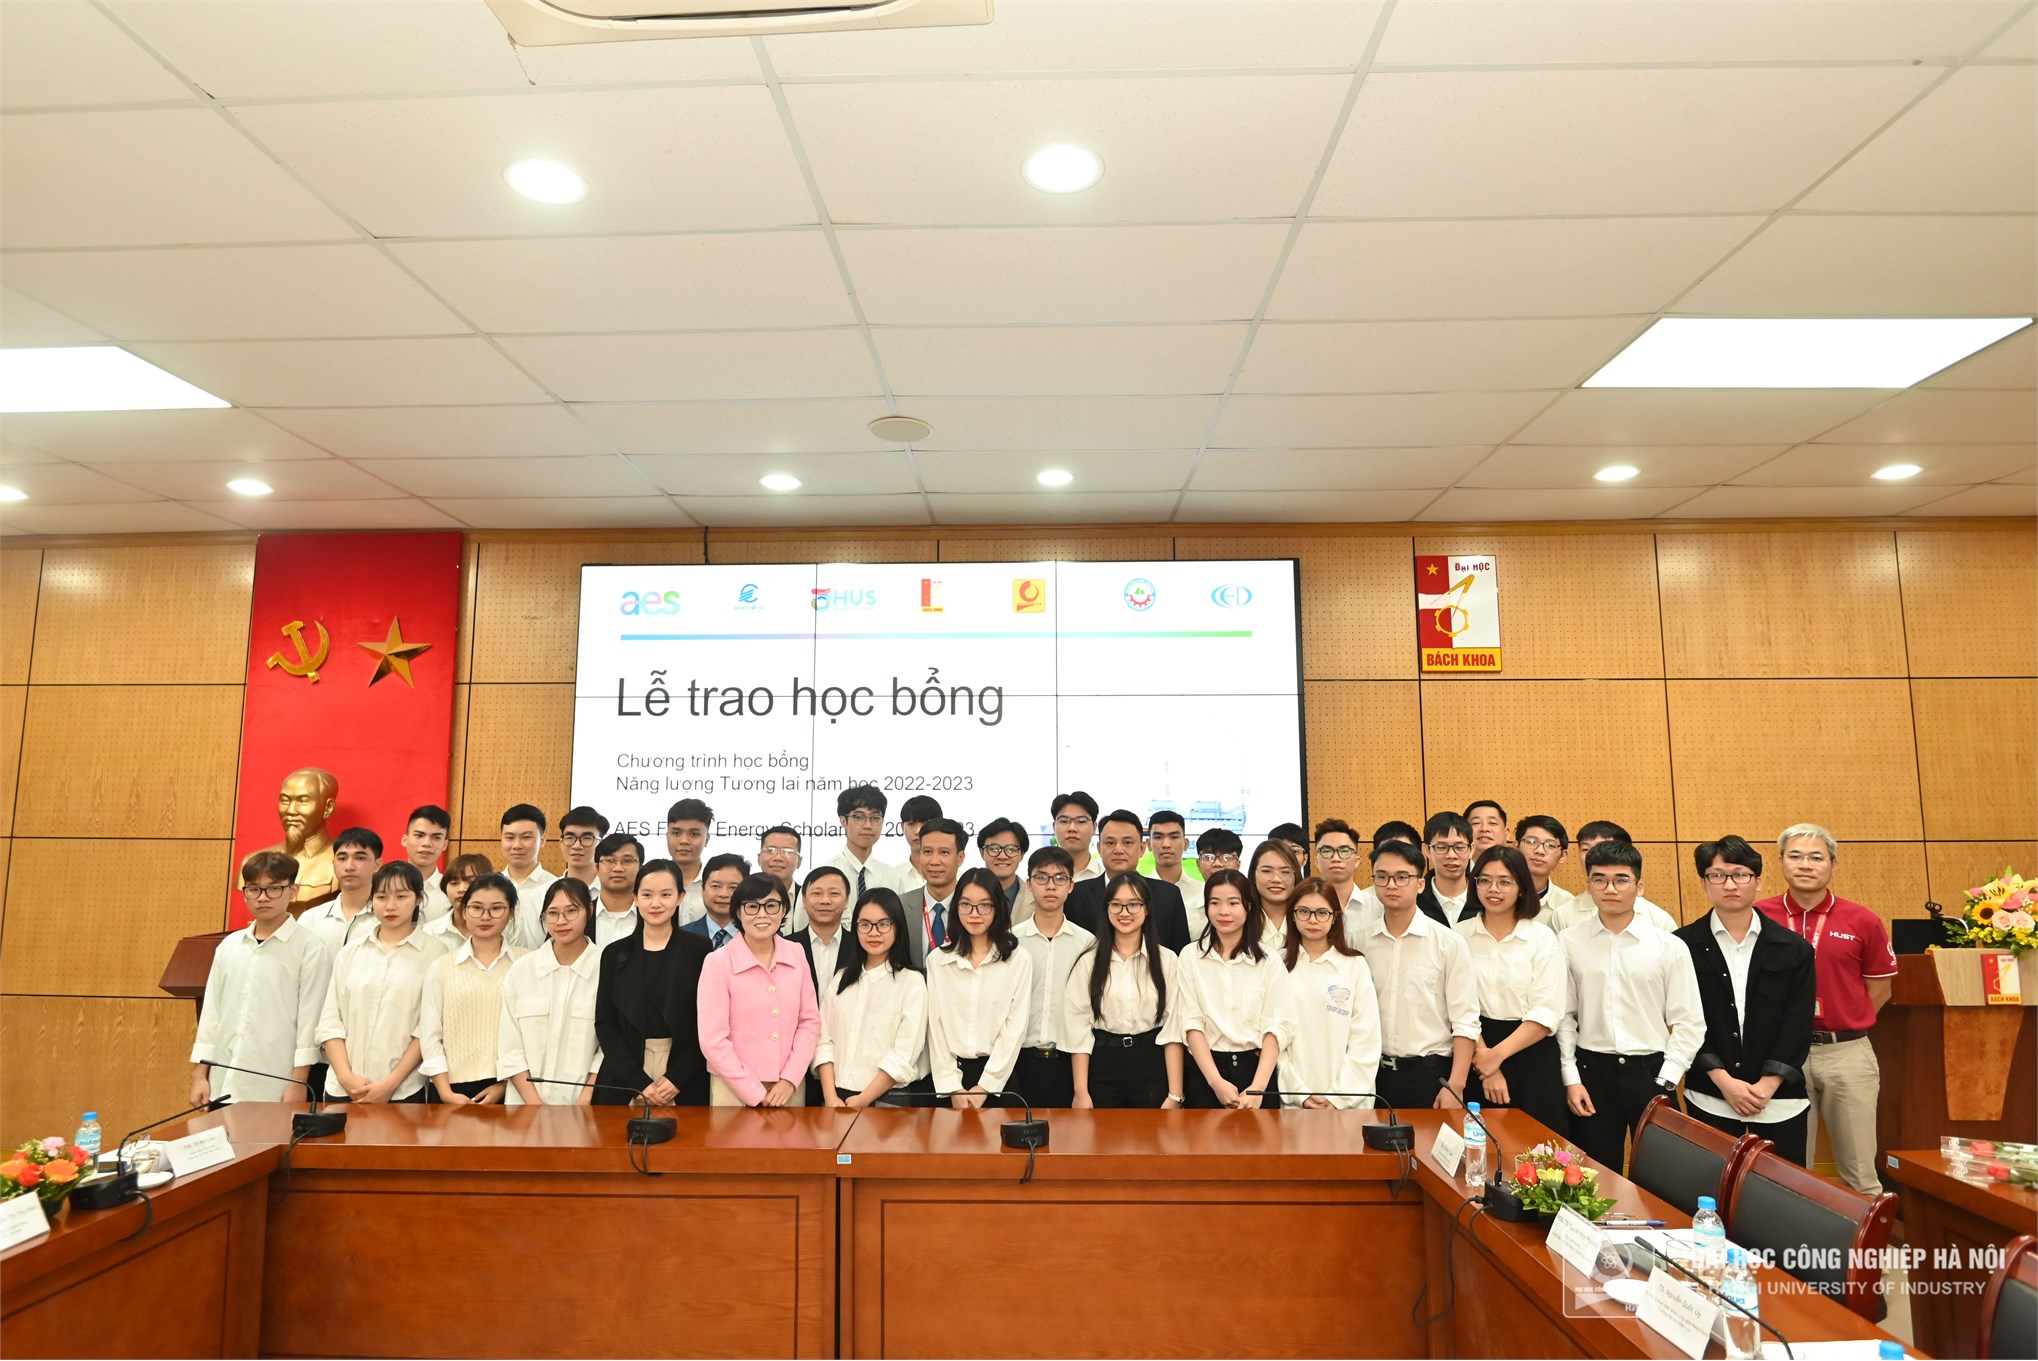 Sinh viên Trường Đại học Công nghiệp Hà Nội nhận học bổng Năng lượng tương lai AES